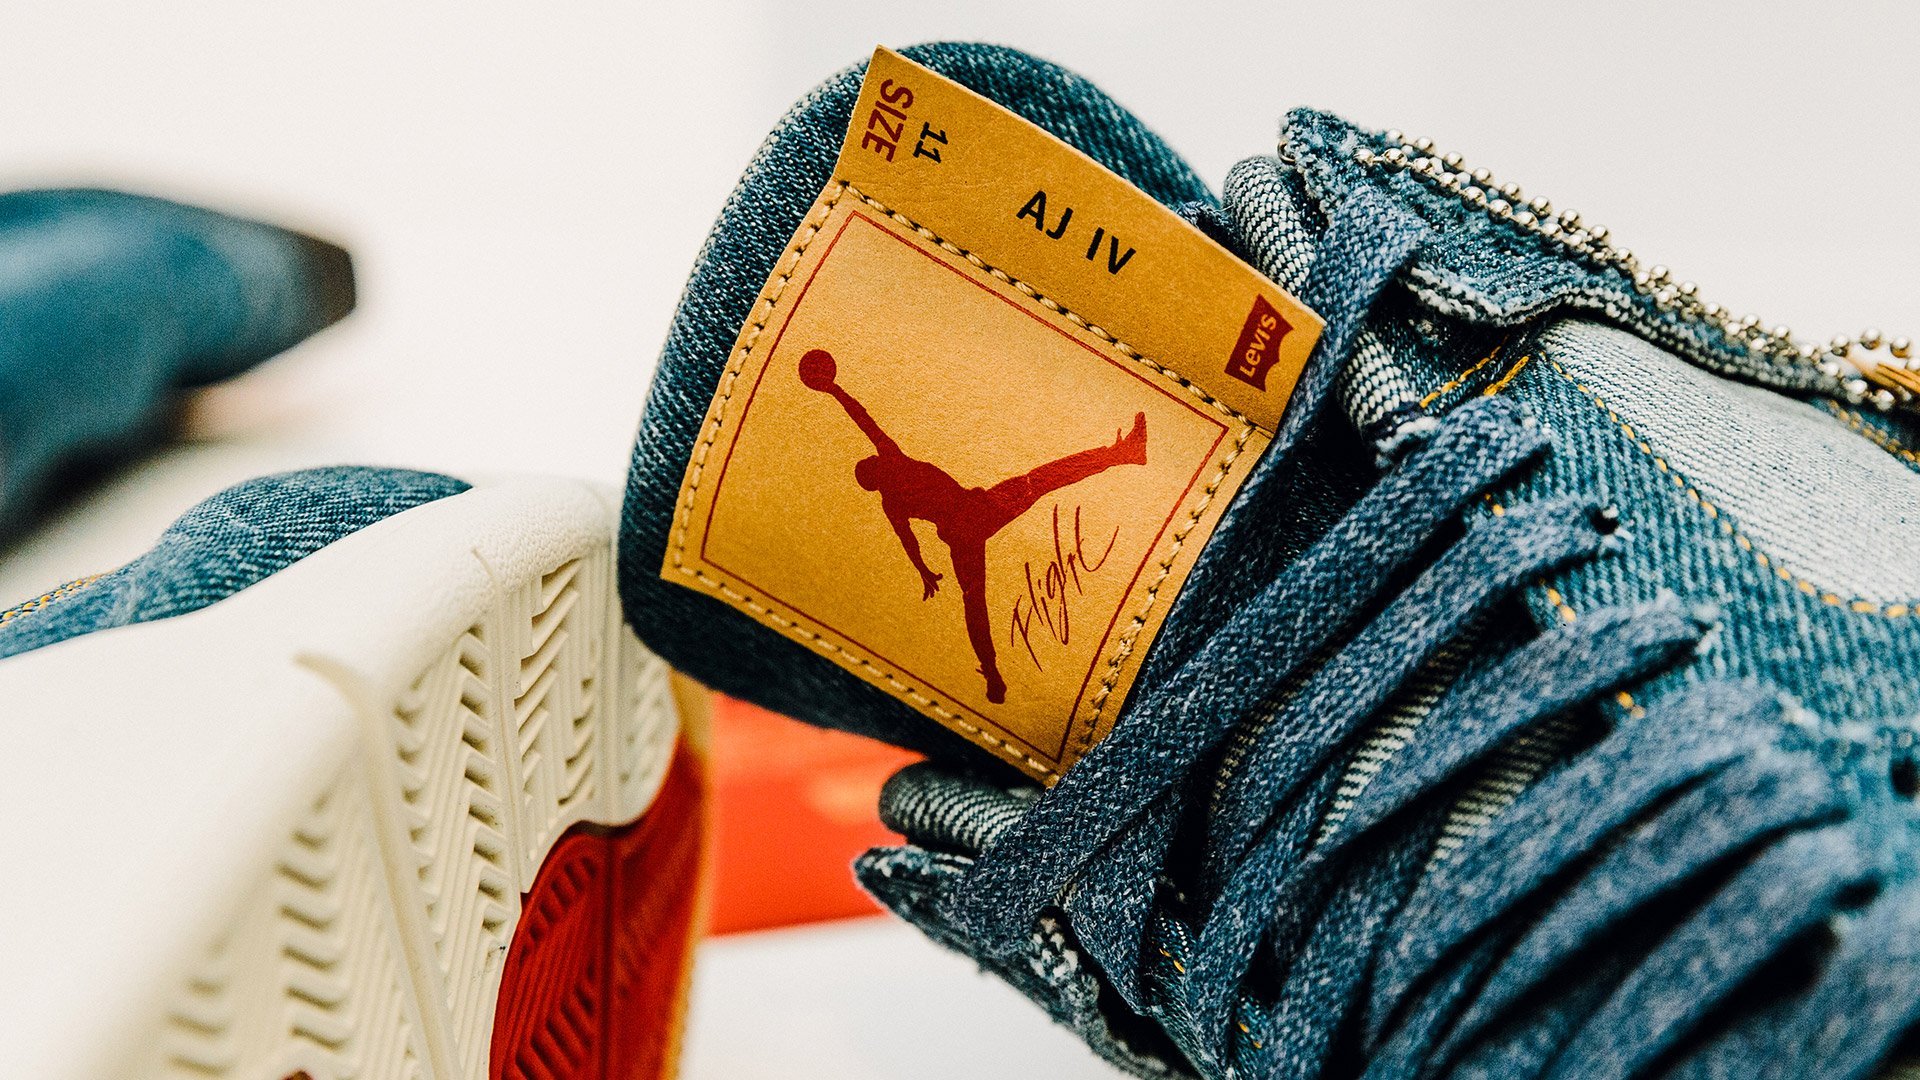 directorio galope bosquejo Dónde comprar la colaboración Levi's vs Jordan - I Love Sneakers